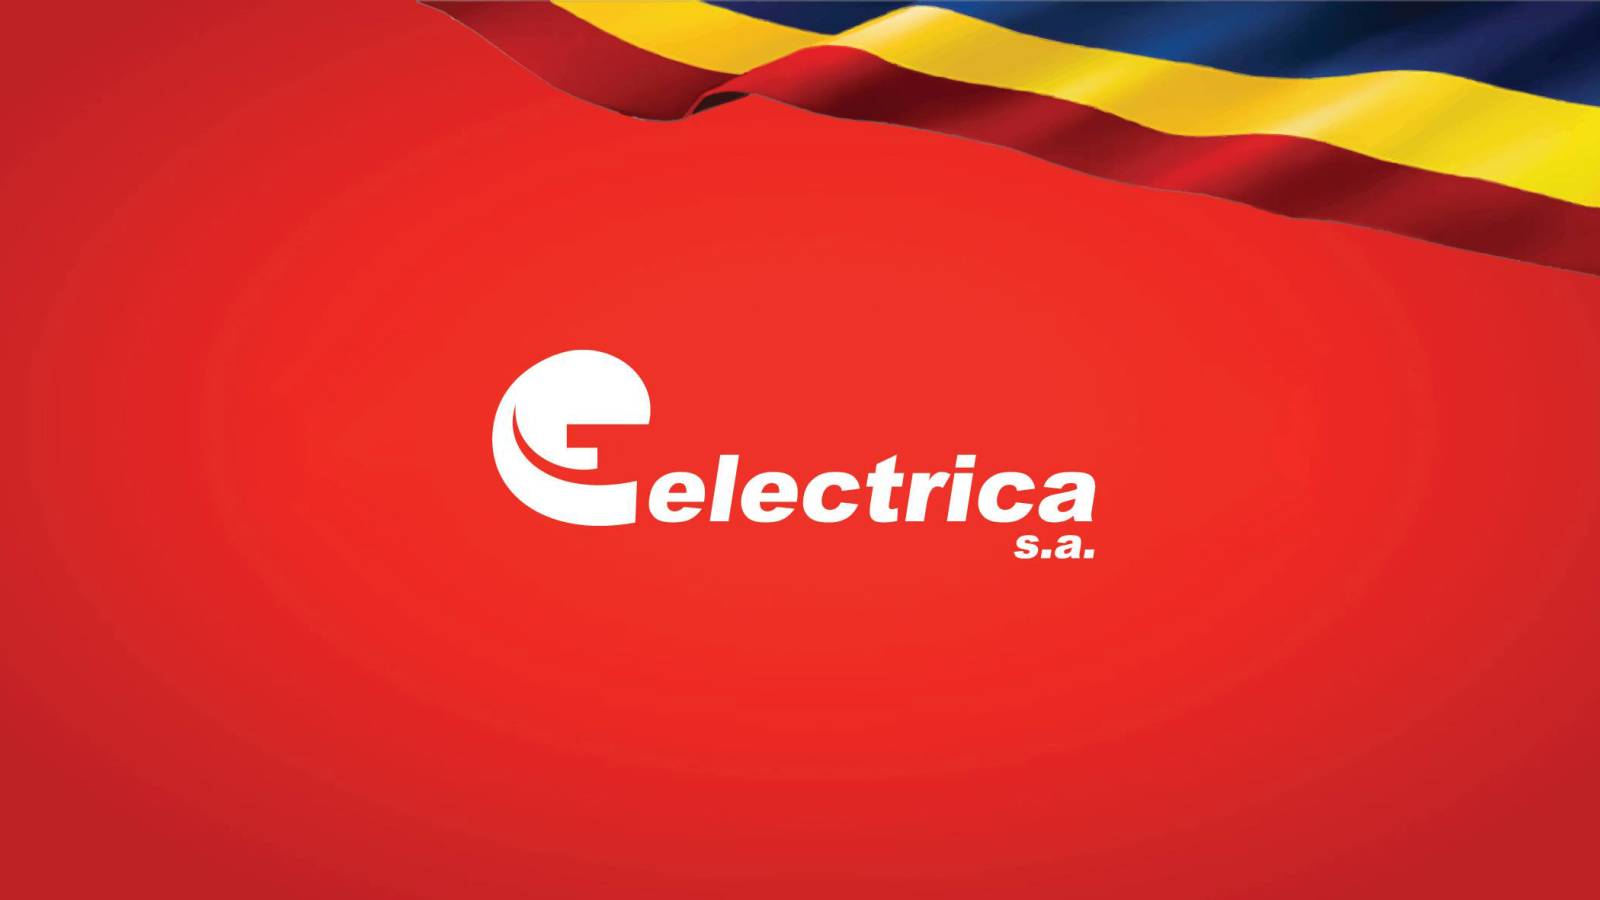 Electrica Viktigt officiellt meddelande SISTA MINUTEN Beslut Ansökan rumänska kunder